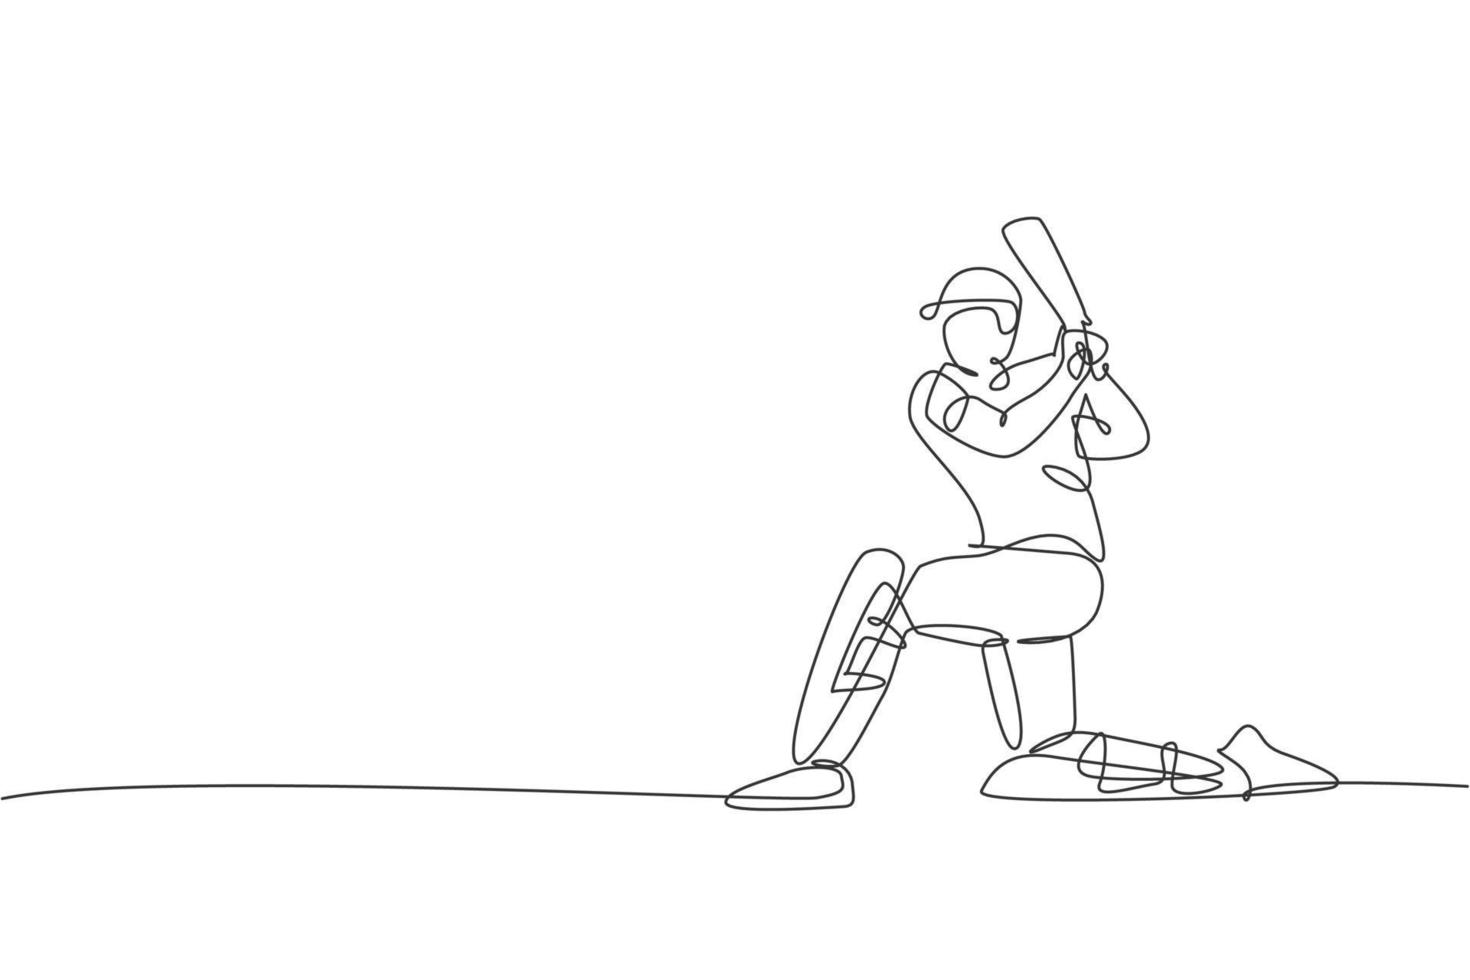 een enkele lijntekening van jonge energieke man cricketspeler staan met knie op de grond vectorillustratie. sportbeursconcept. modern ononderbroken lijntekeningontwerp voor cricketwedstrijdbanner vector